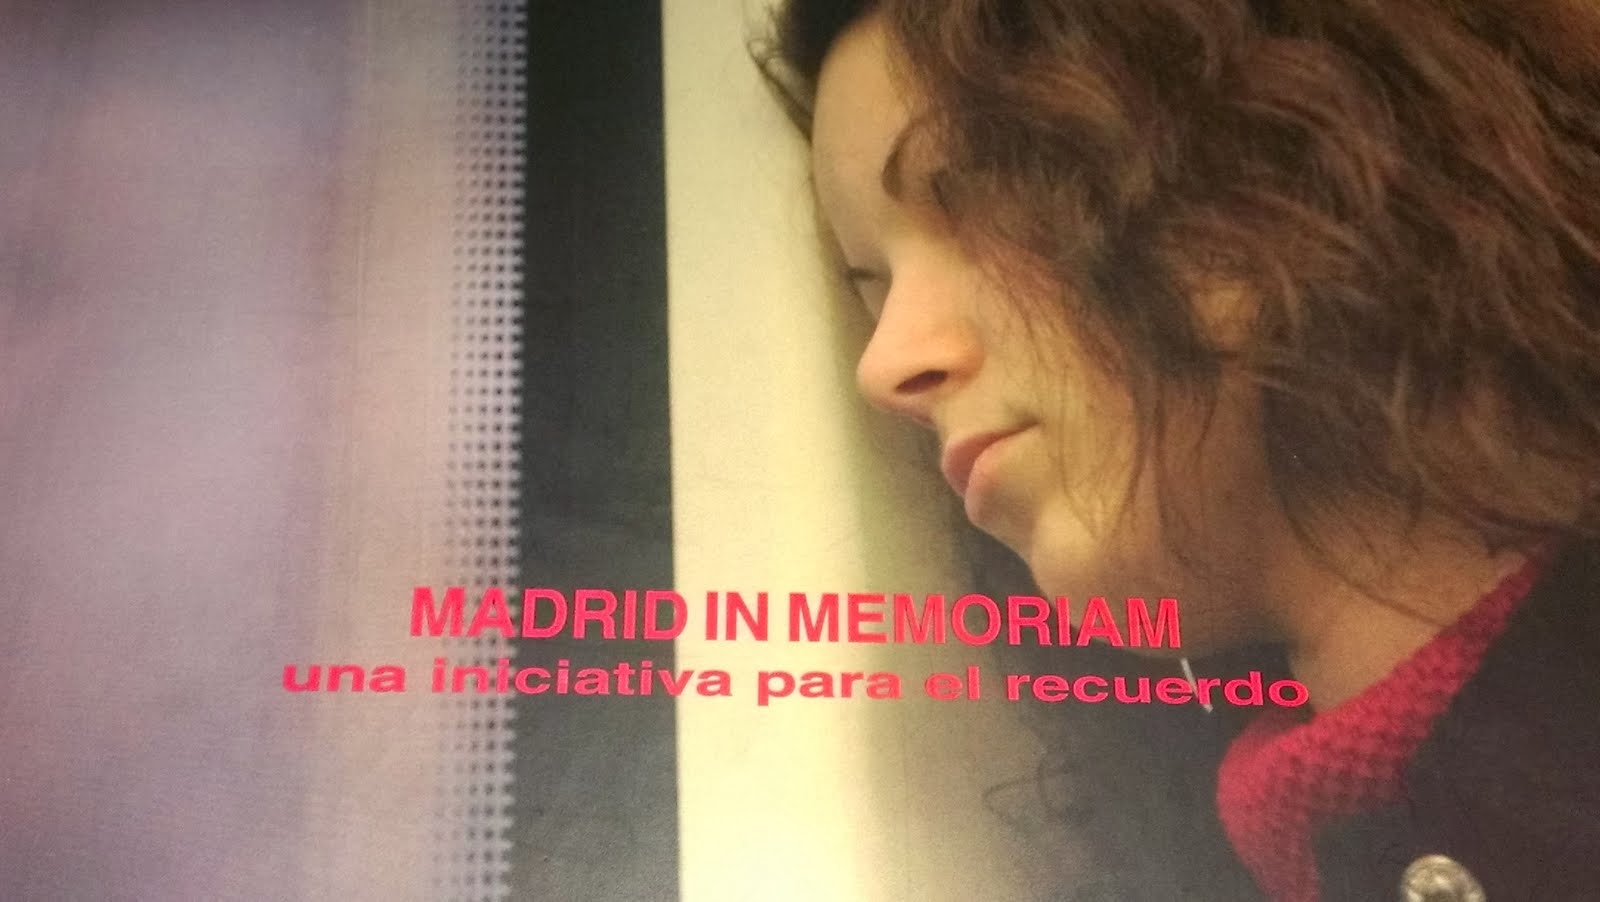 MADRID IN MEMORIAM